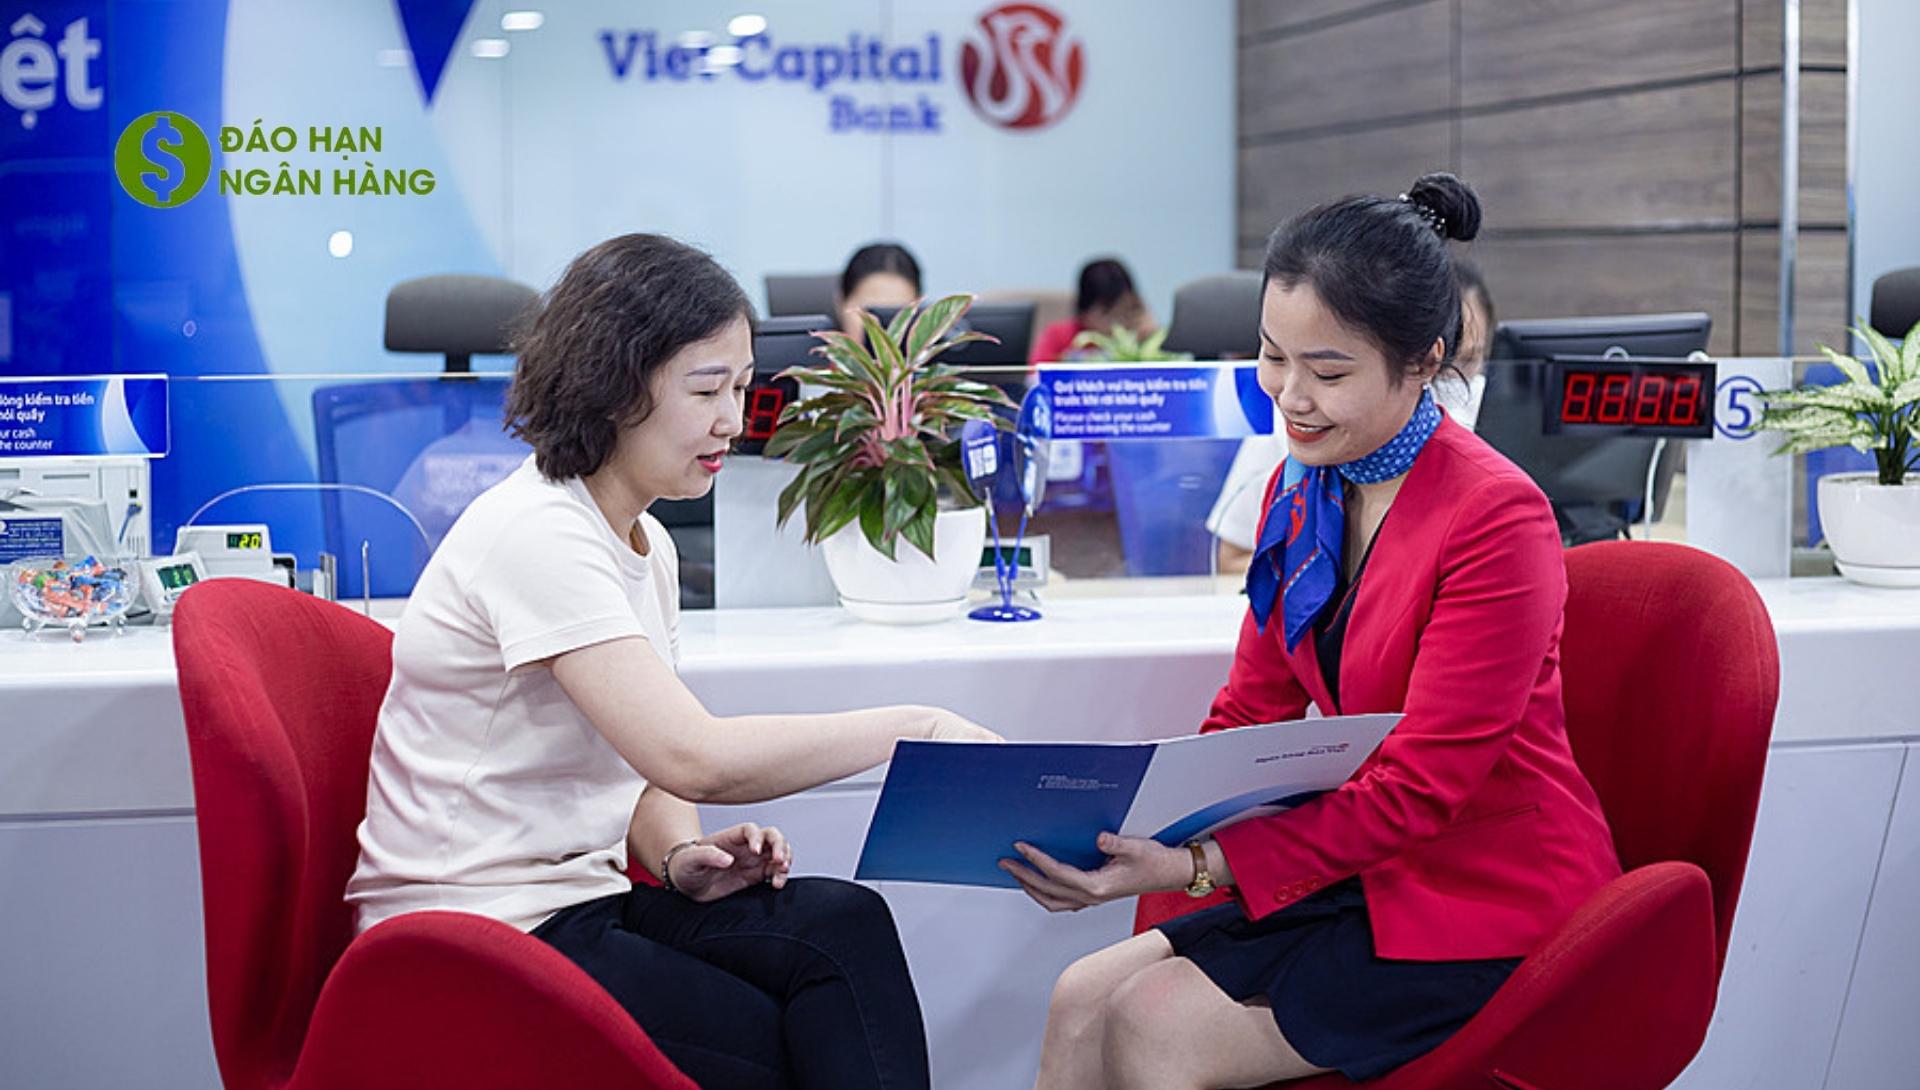 Điều kiện vay đáo hạn ngân hàng Viet Capital Bank